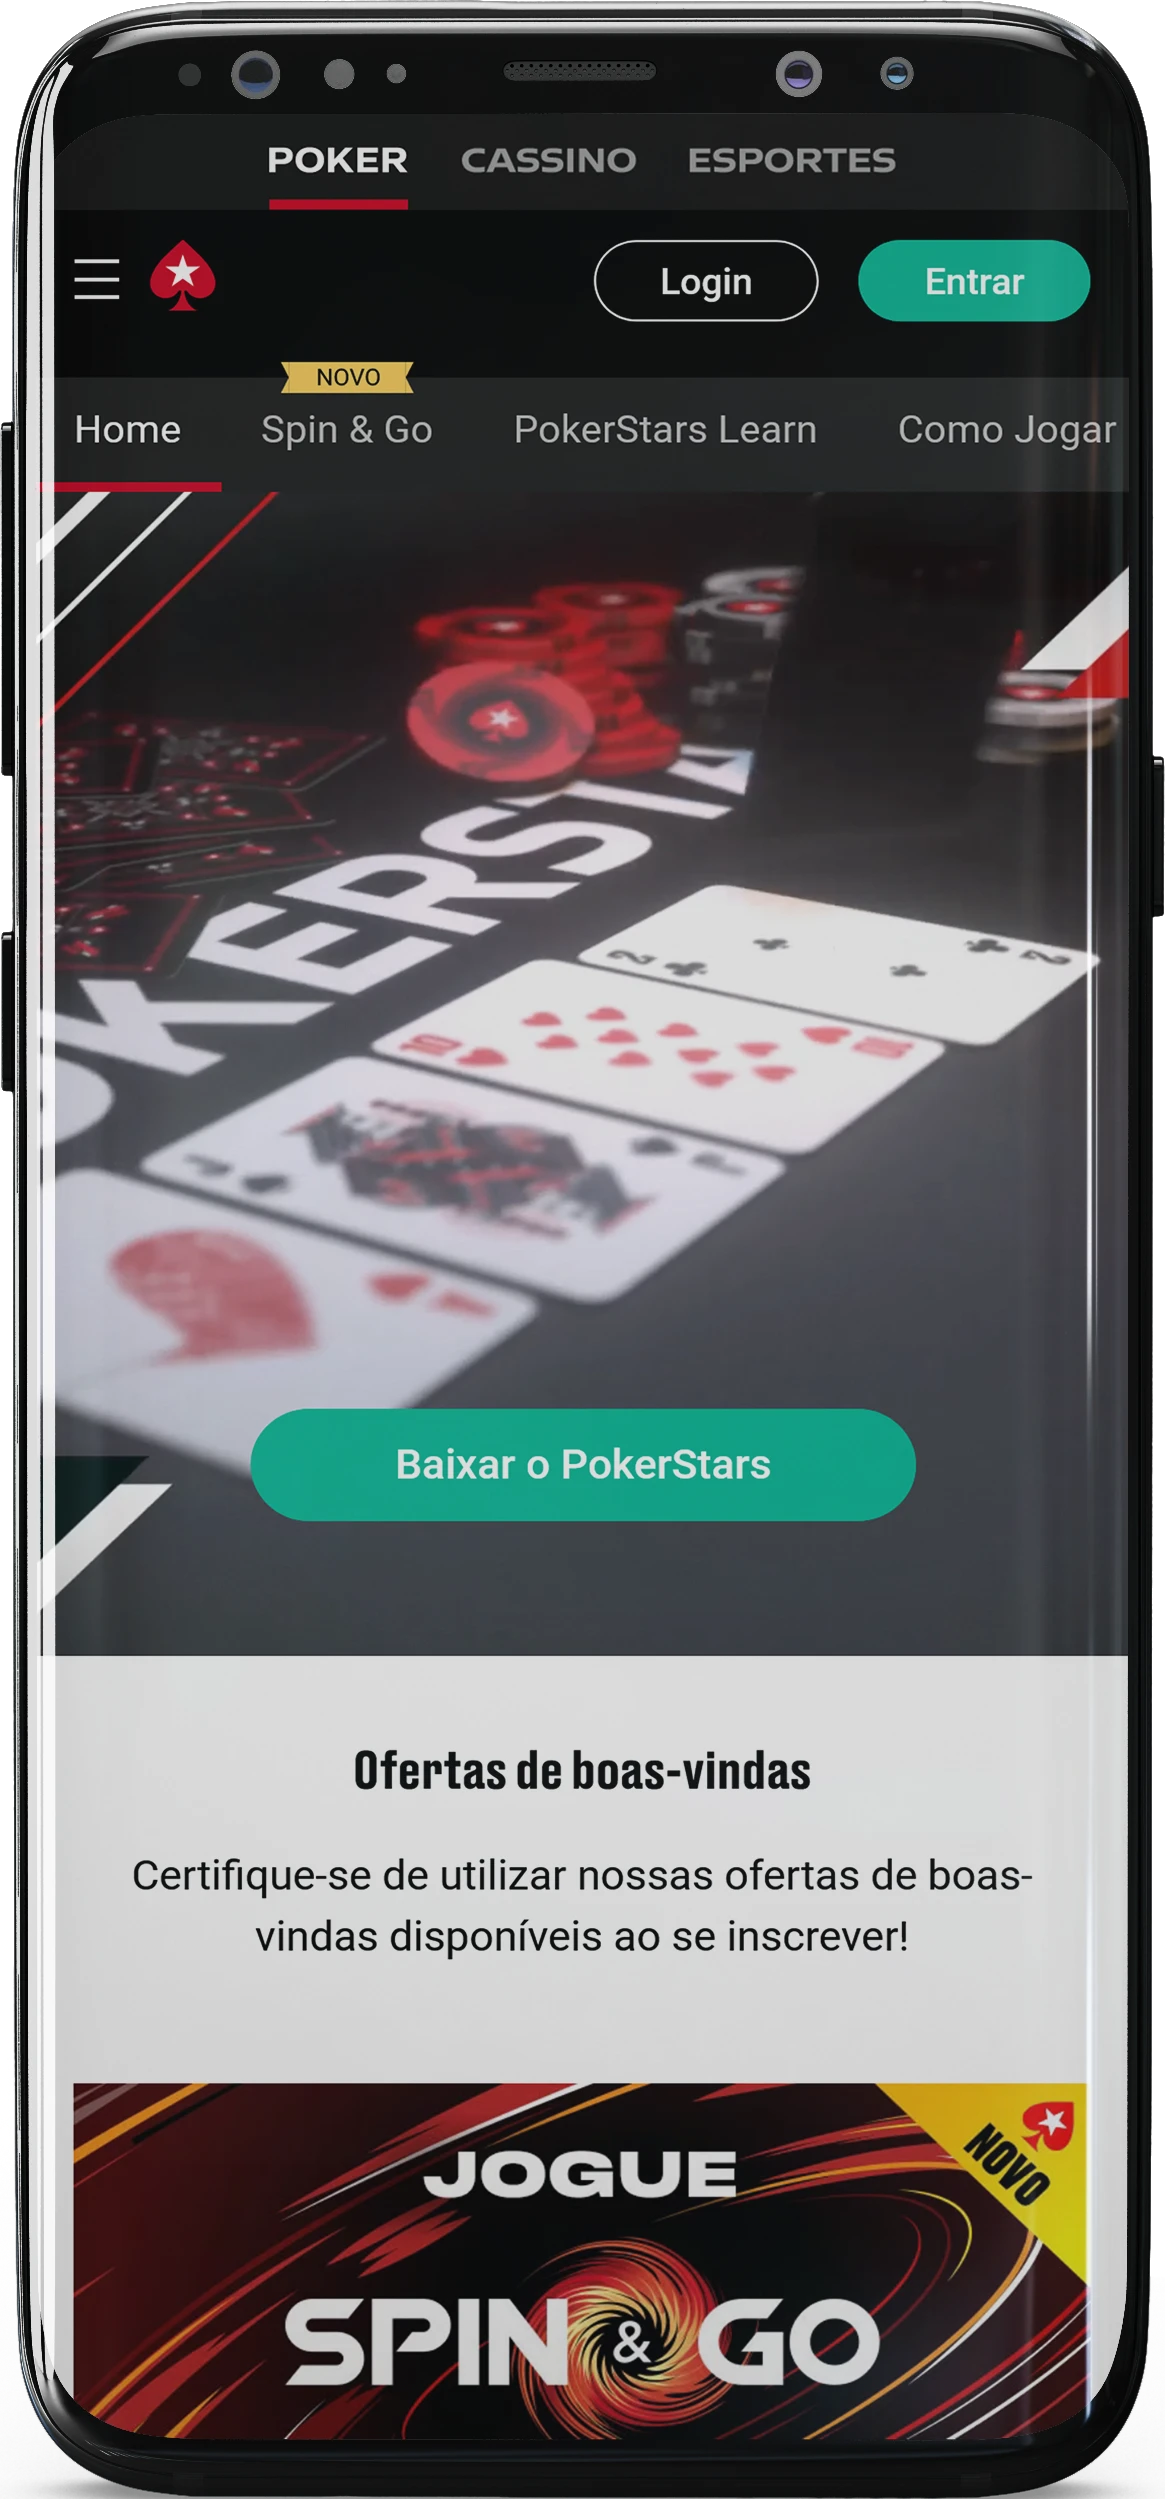 Captura de tela da página inicial do aplicativo PokerStars